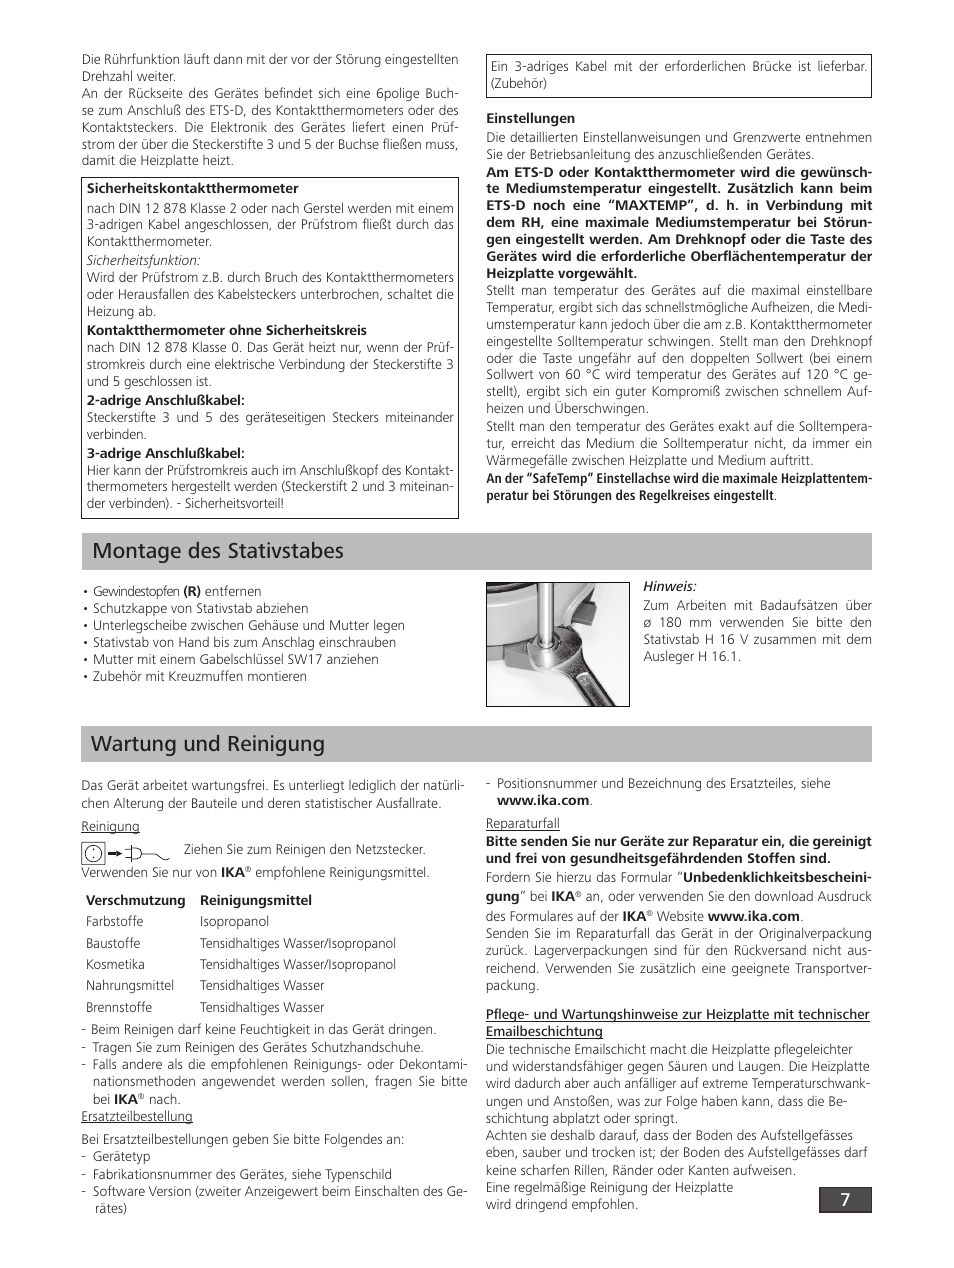 Montage des stativstabes, Wartung und reinigung | IKA RH digital User Manual | Page 7 / 52